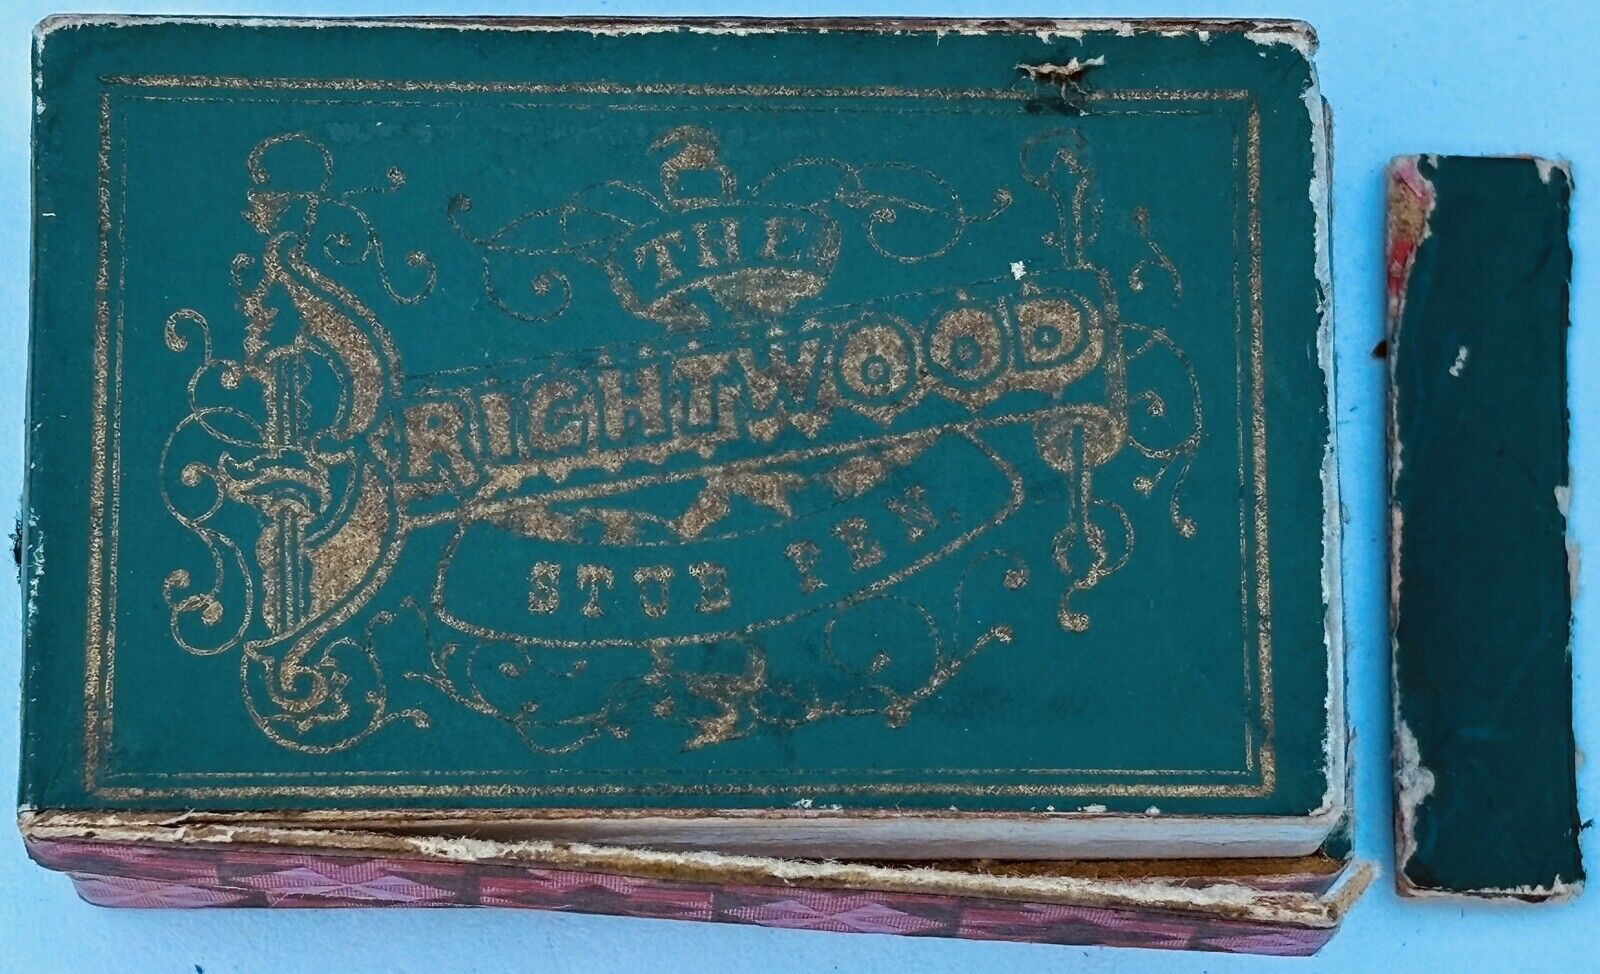 Rare Antique C. 1900 Brightwood Stub Pen Nibs Original Box W/ Contents